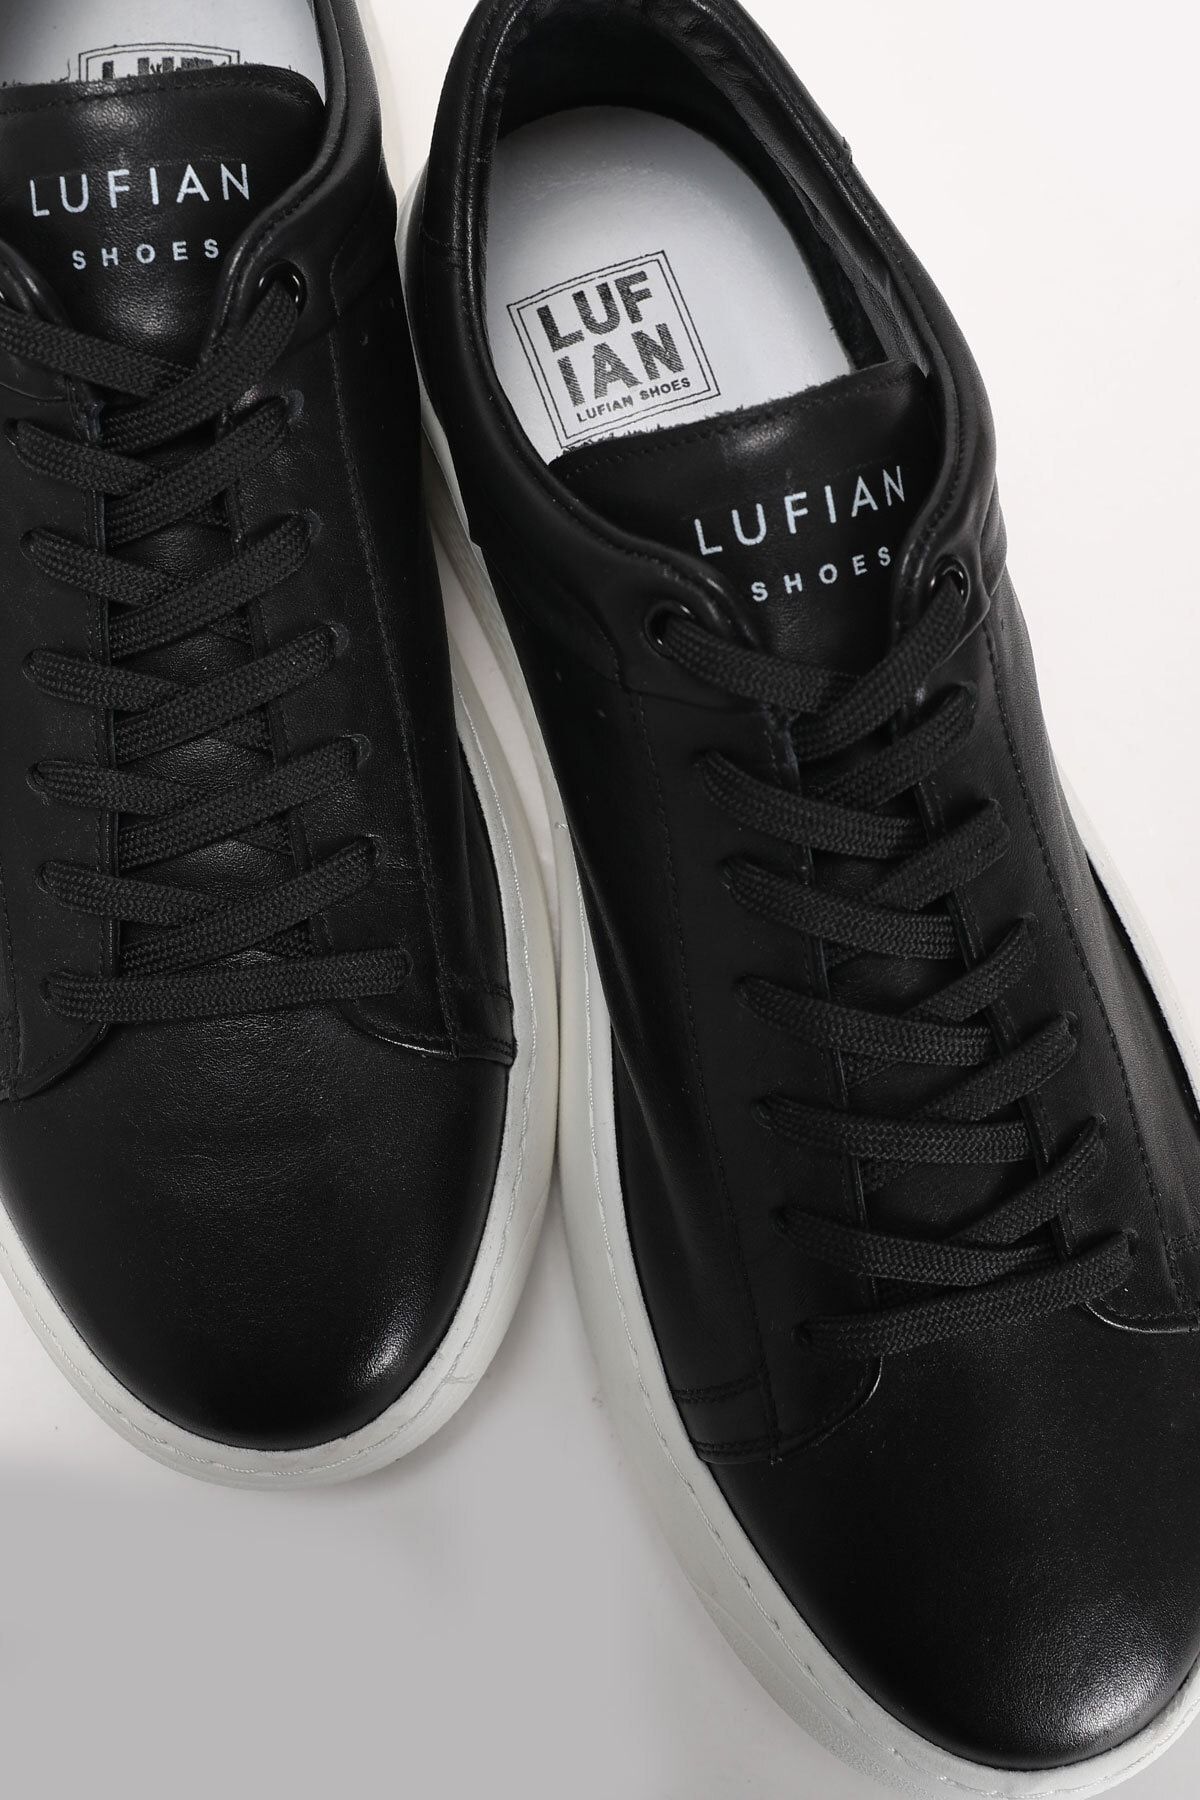 Lufian کفش ورزشی فرانک